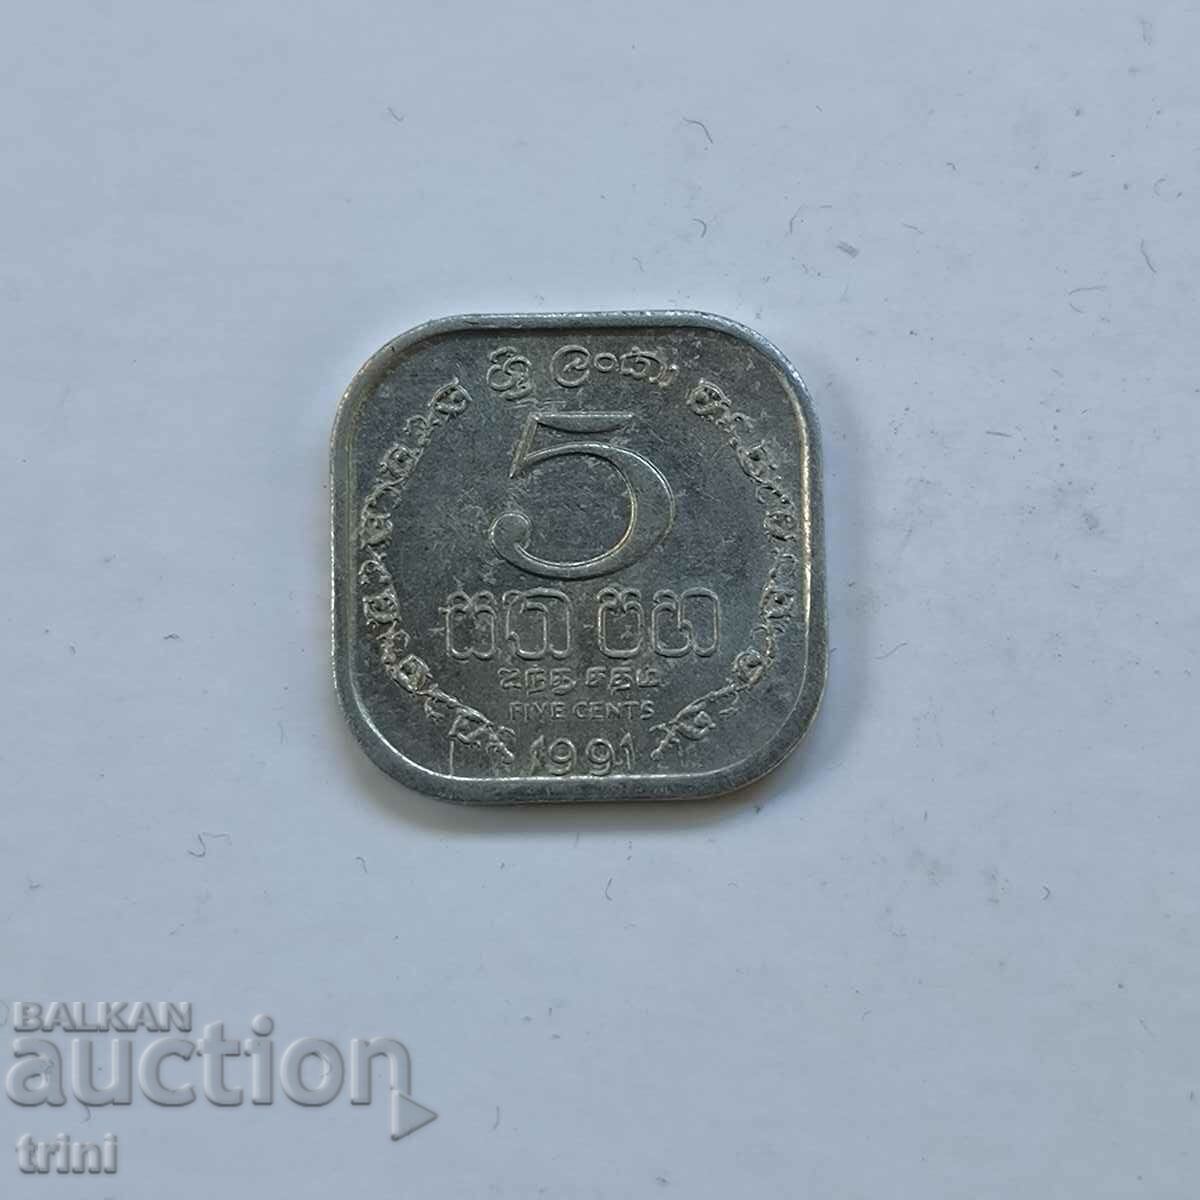 Σρι Λάνκα 5 σεντς 1991